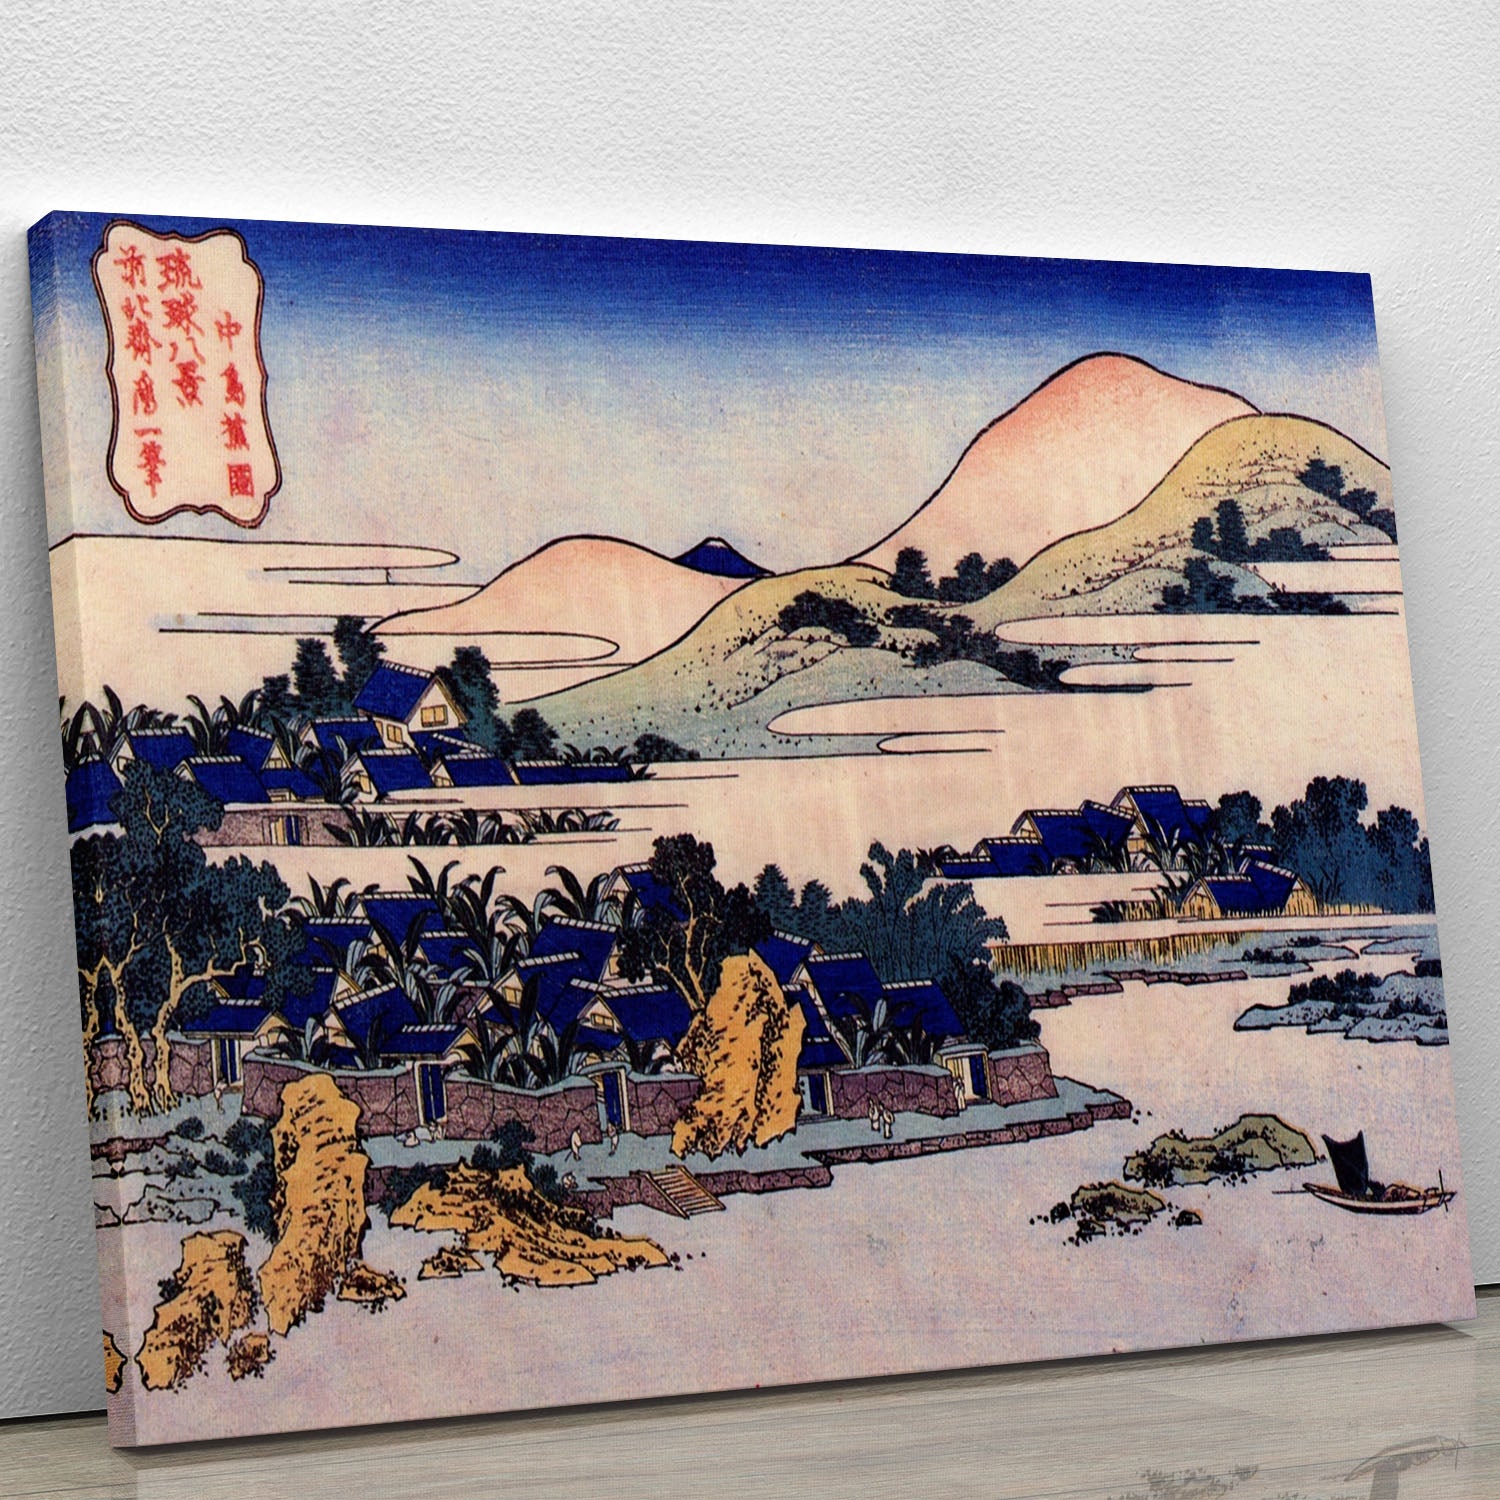 Banana plantation at Chuto by Hokusai Canvas Print or Poster - Canvas Art Rocks - 1